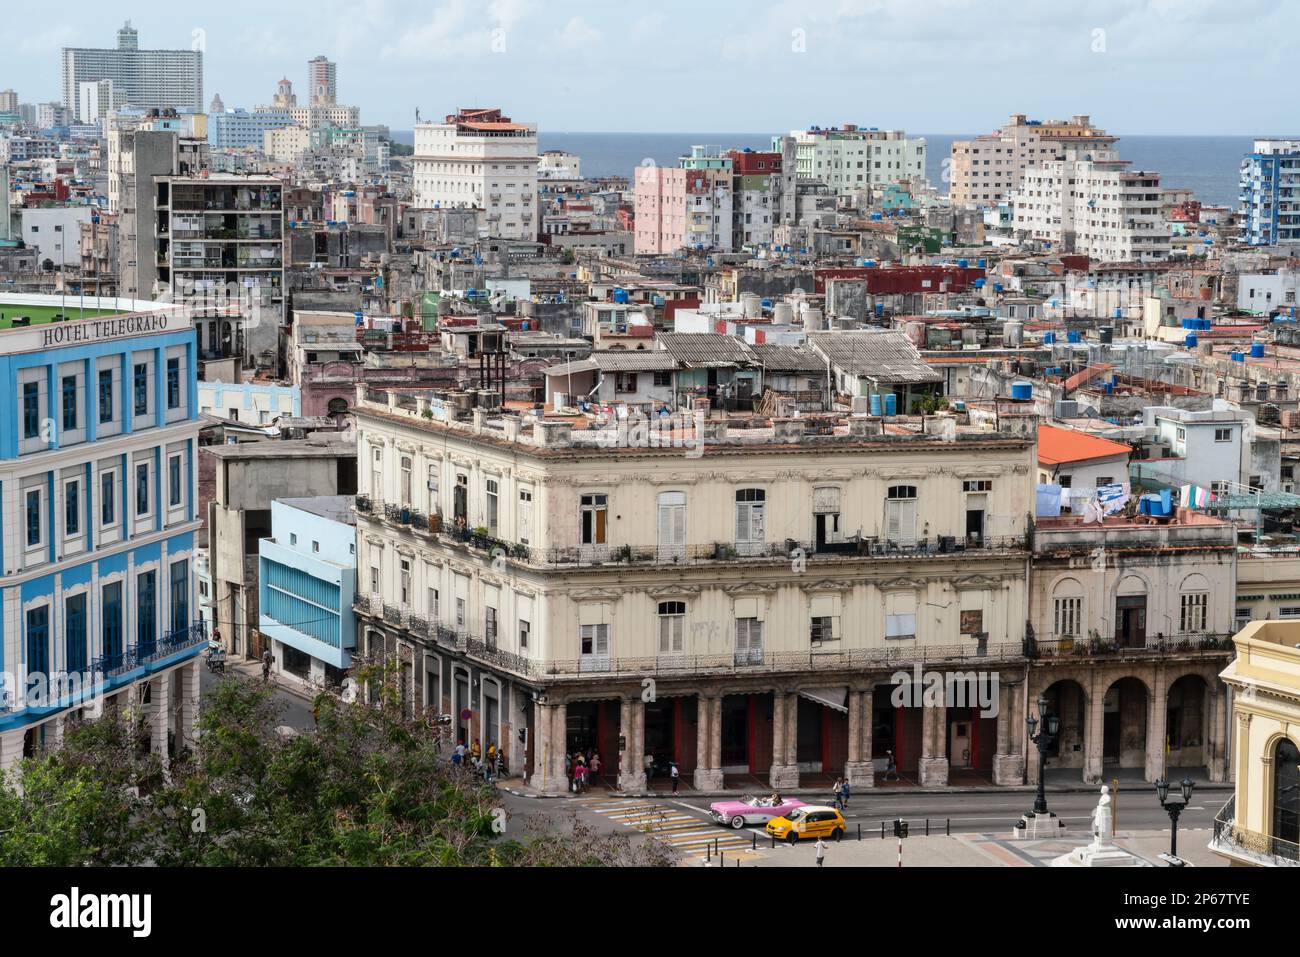 Vue aérienne des rues qui se divisent entre la Havane moderne et la Vieille Havane, Cuba, les Antilles, les Caraïbes et l'Amérique centrale Banque D'Images